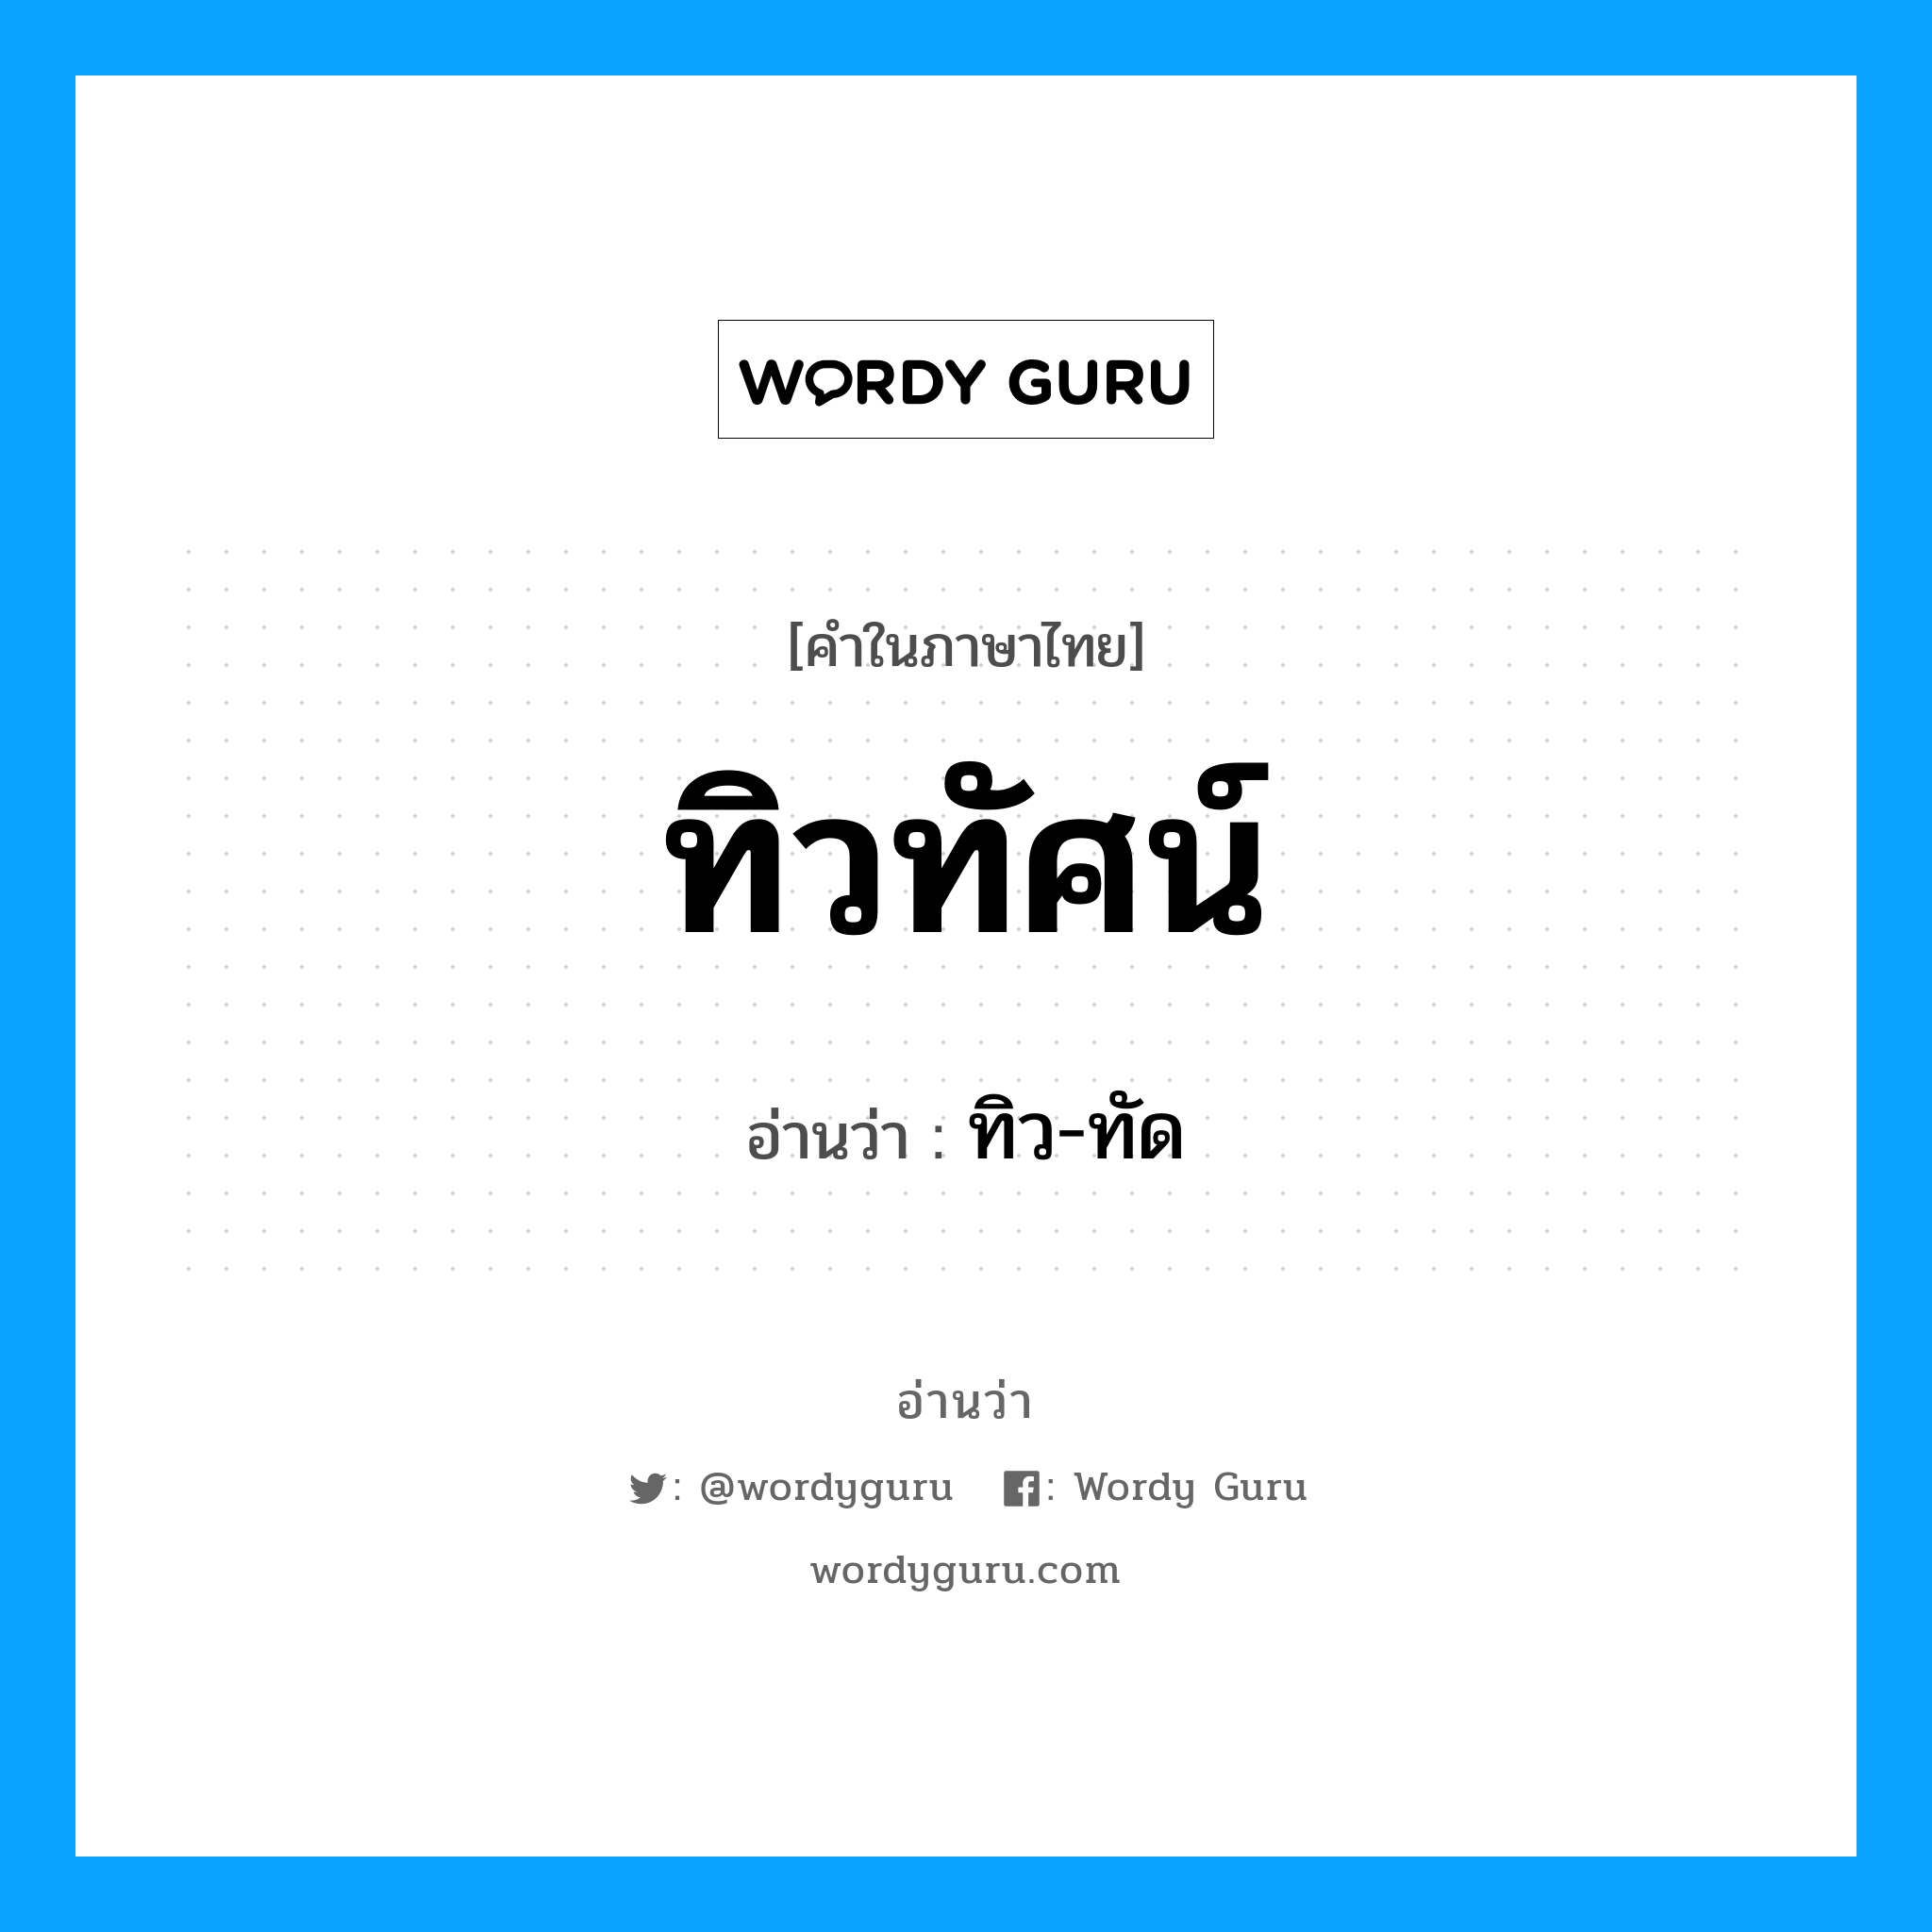 ทิว-ทัด เป็นคำอ่านของคำไหน?, คำในภาษาไทย ทิว-ทัด อ่านว่า ทิวทัศน์